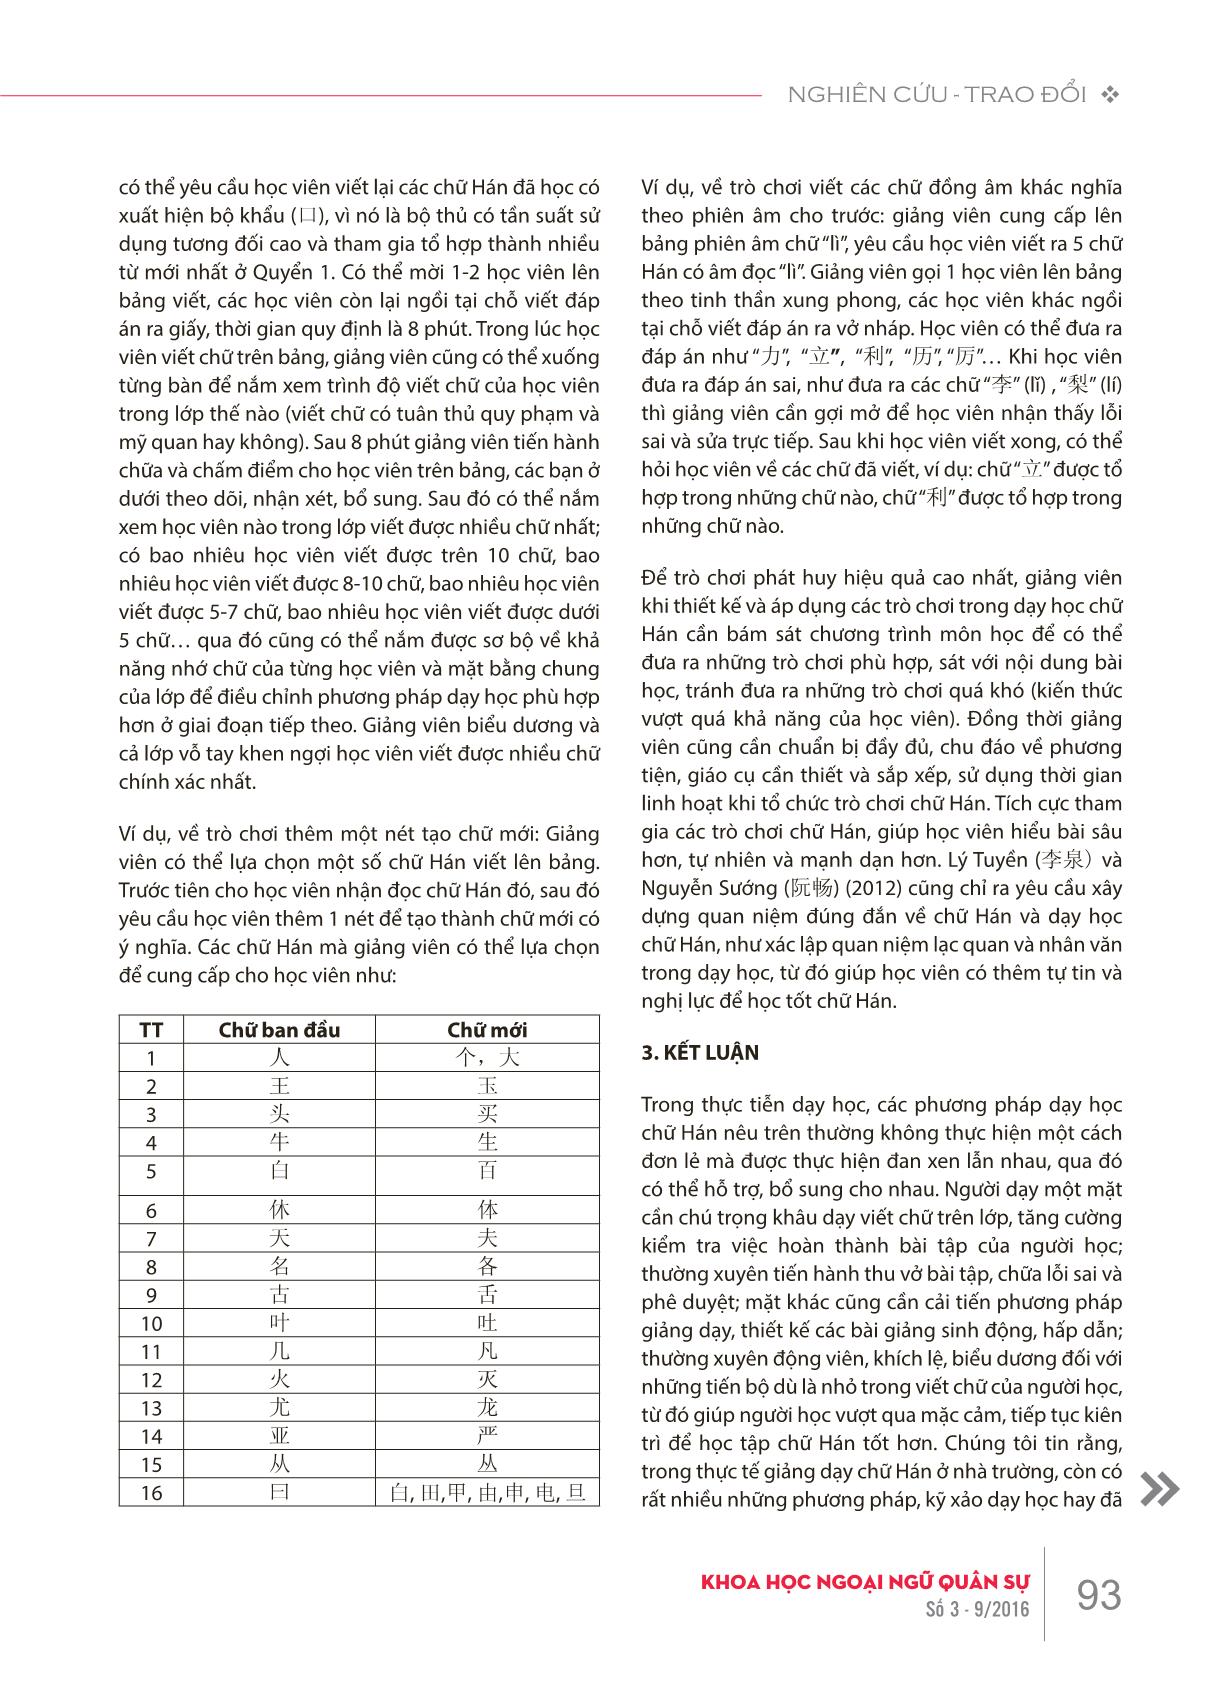 Đặc điểm chữ hán và phương pháp dạy học chữ Hán giai đoạn cơ sở trang 6